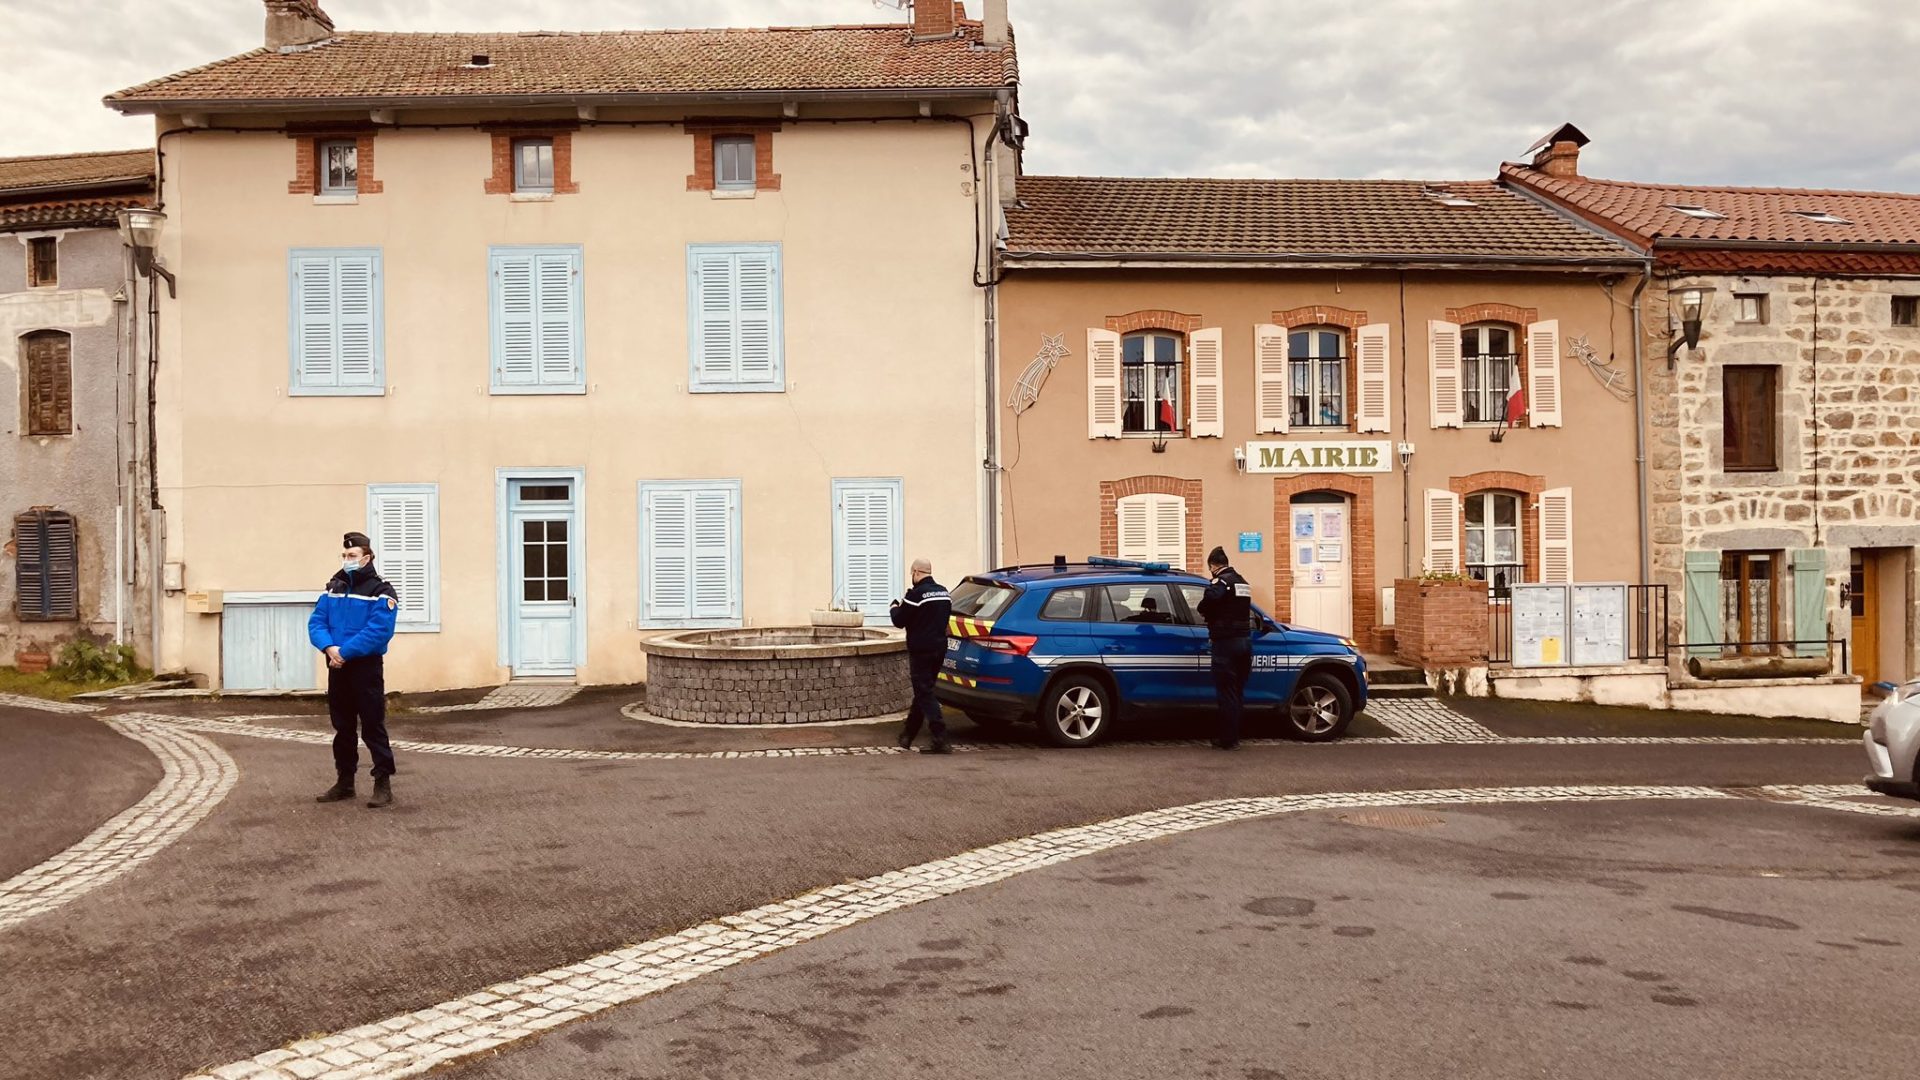 Três polícias mortos enquanto respondiam a caso de violência doméstica em França. Suspeito encontrado sem vida